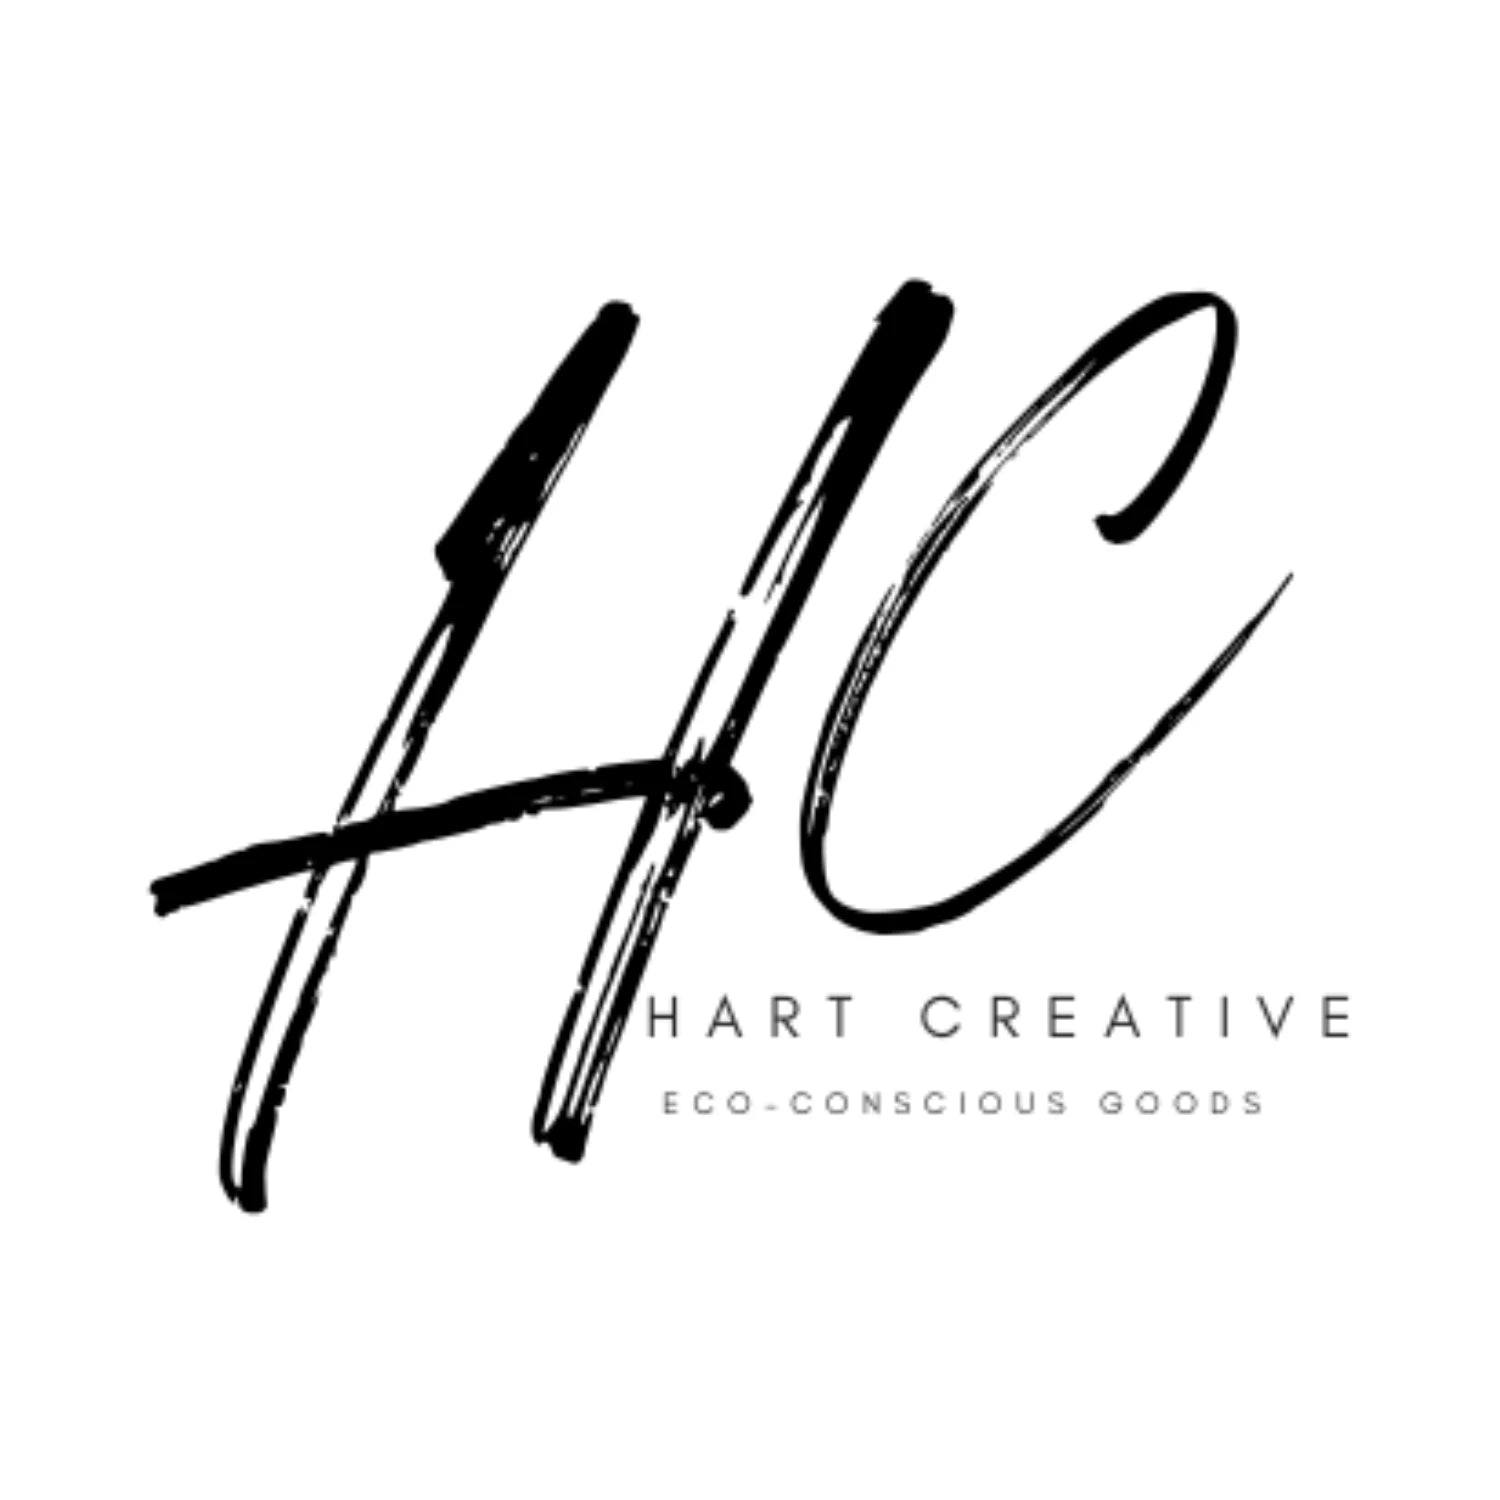 Hart Creative